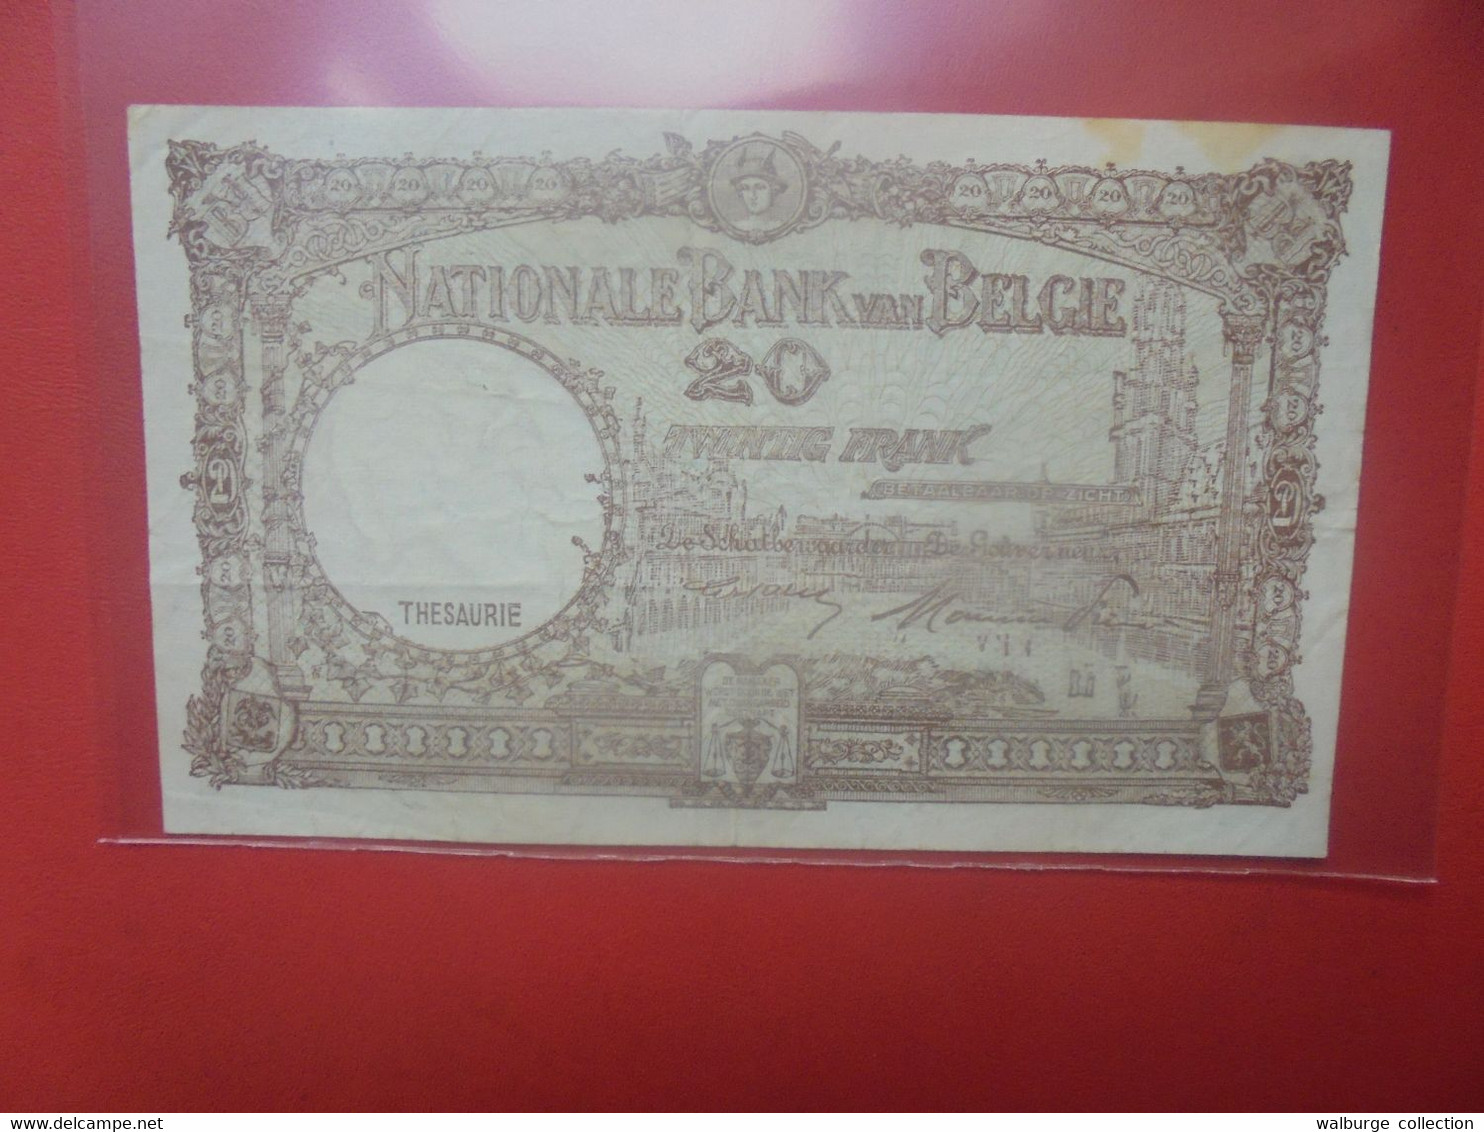 BELGIQUE 20 Francs 1-9-48 Circuler (B.18) - 20 Francos